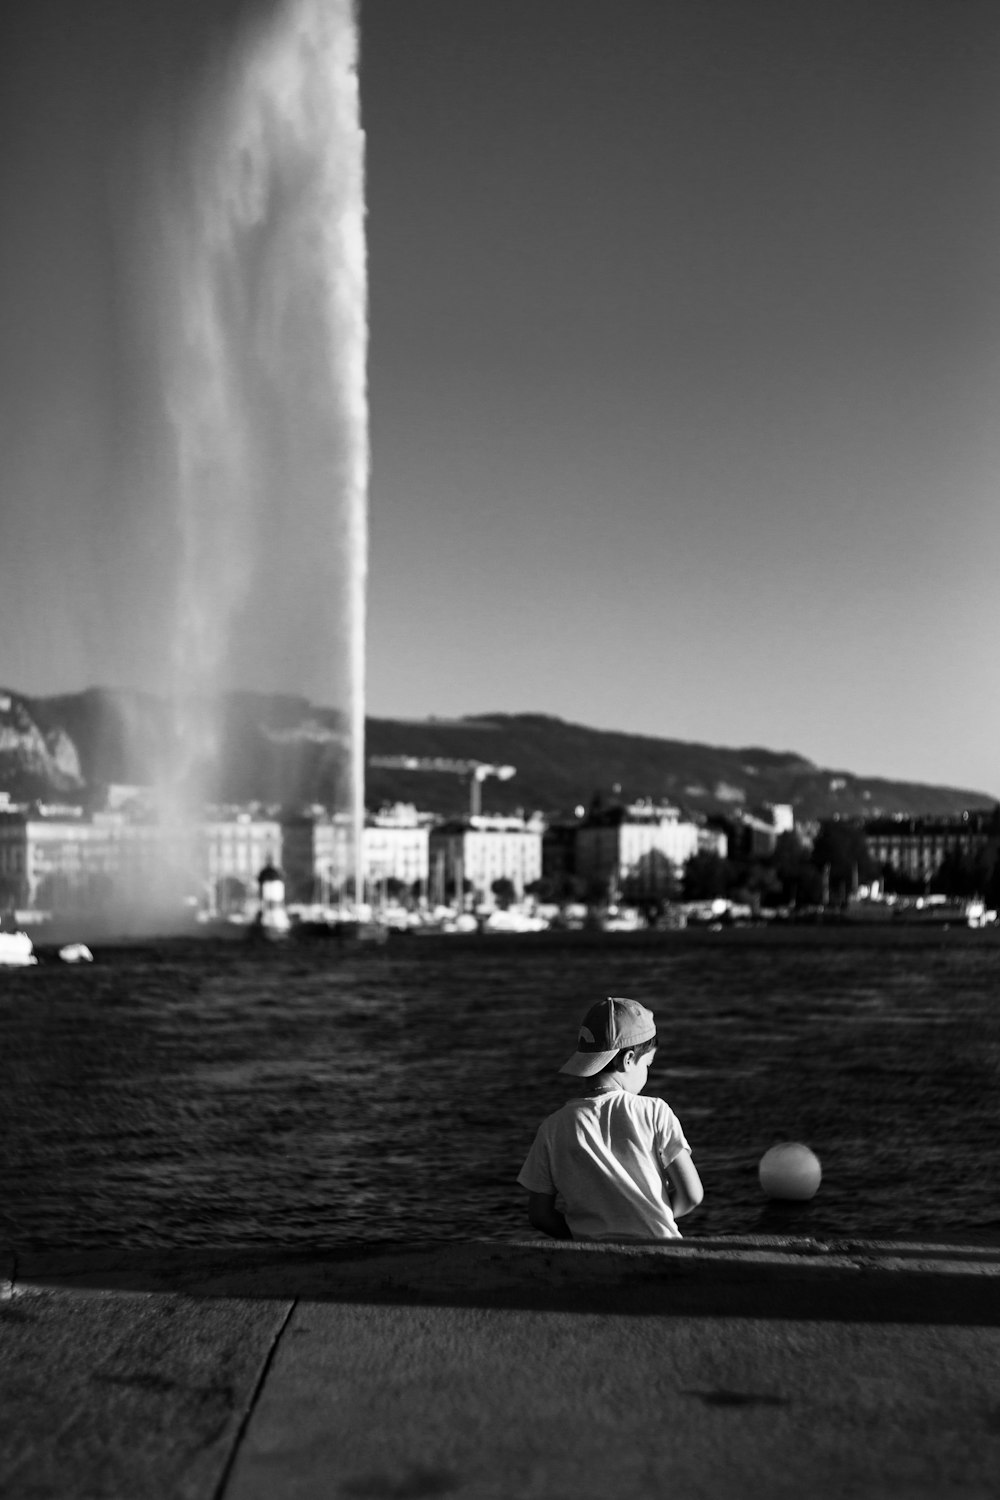 fotografia in scala di grigi di ragazzo seduto accanto allo specchio d'acqua